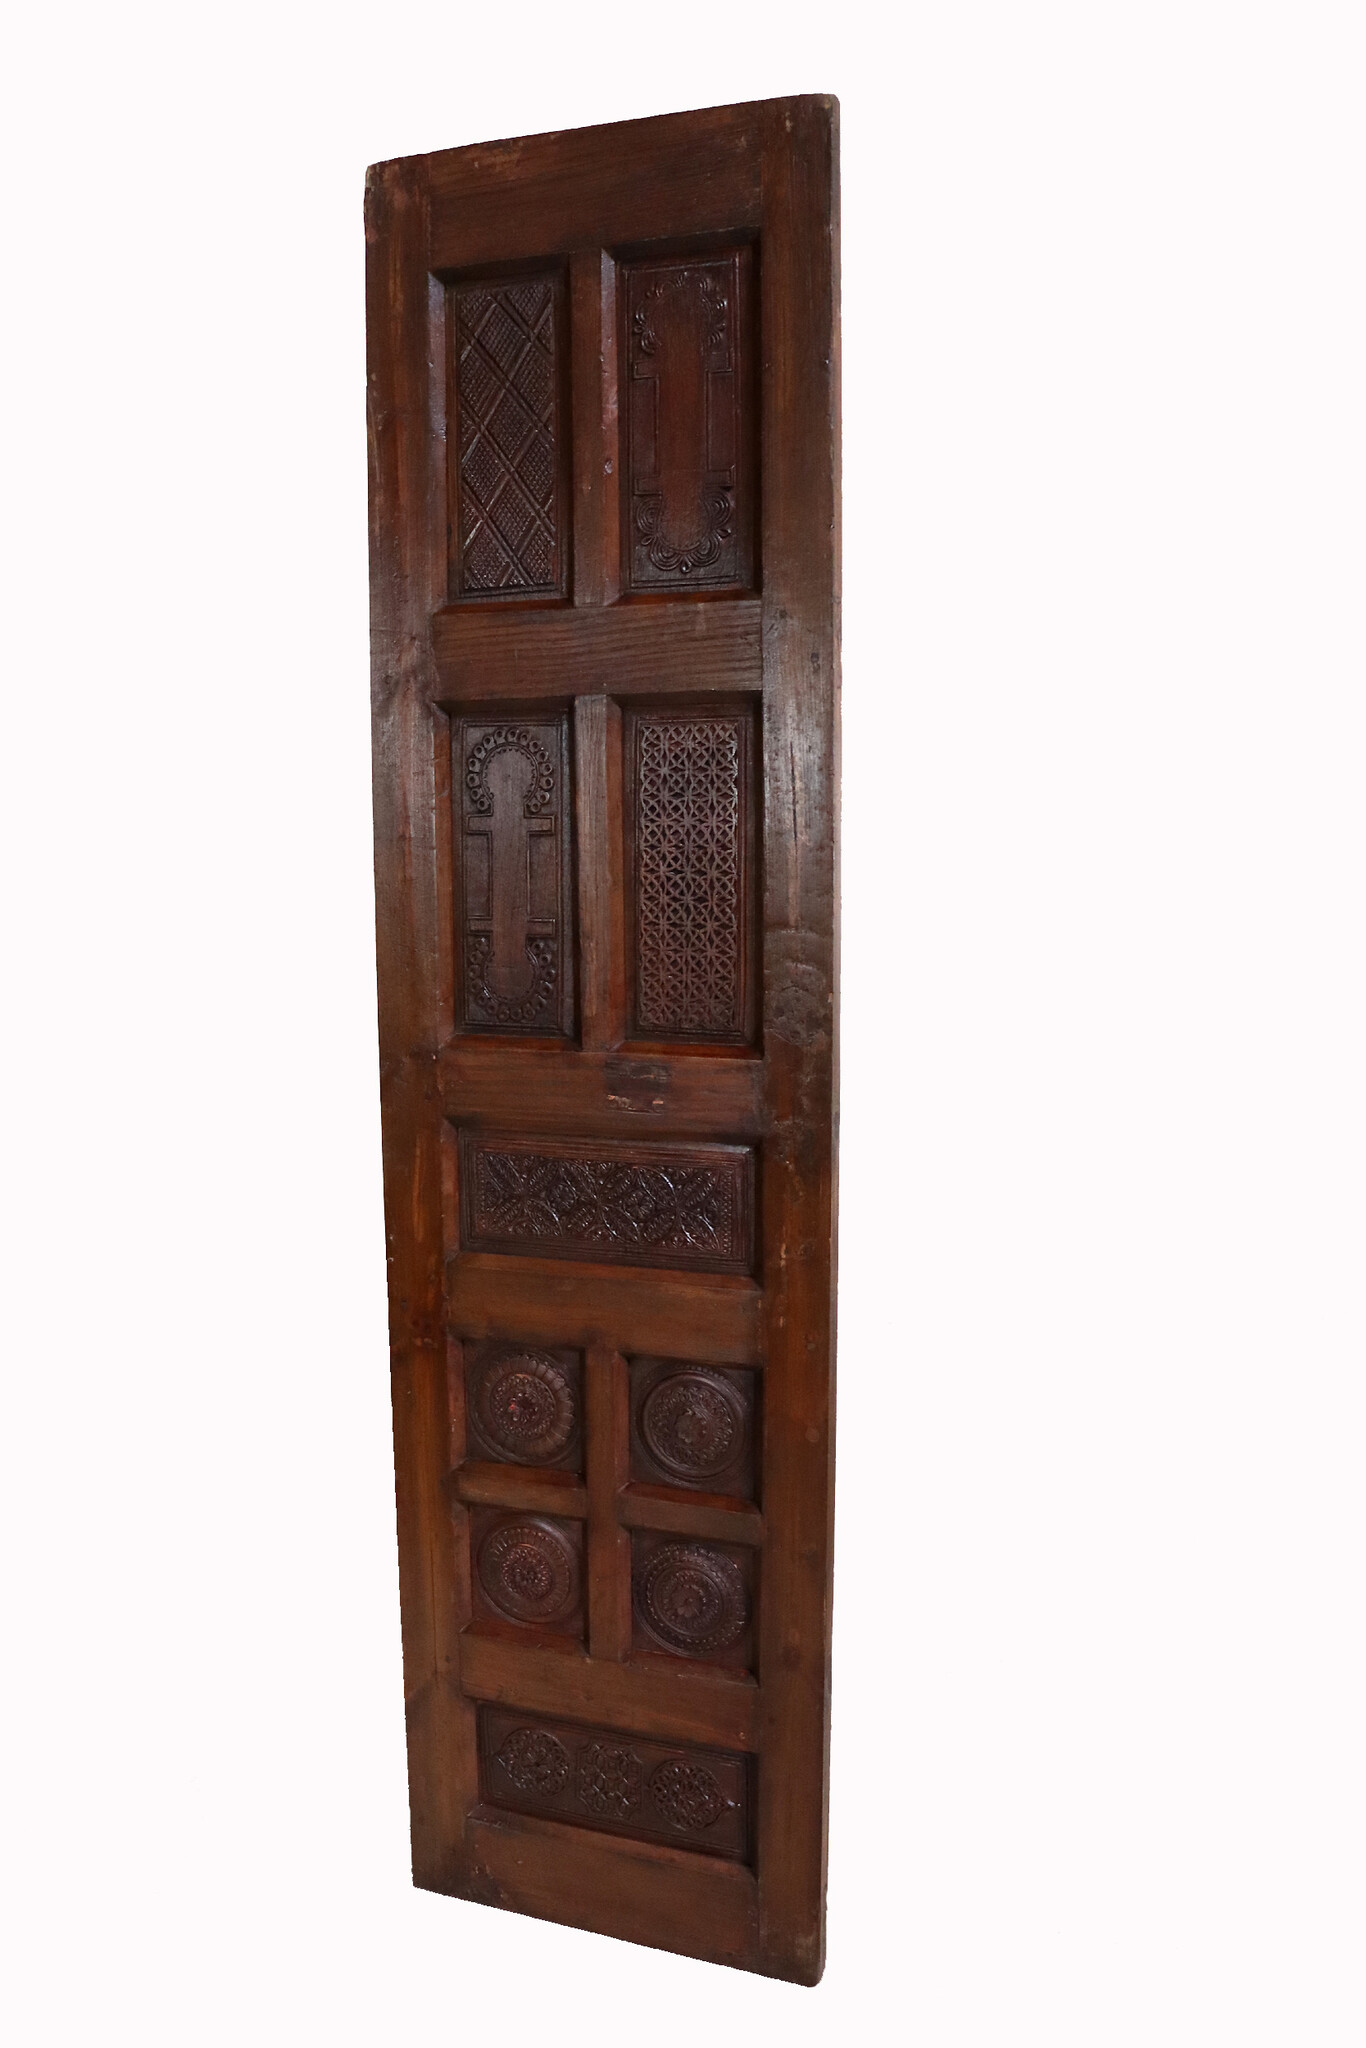 a couple of Antique orient solid wood handmade and hand carved sliding door room door Barndoors door panel from Swat valley pakistan 23/T